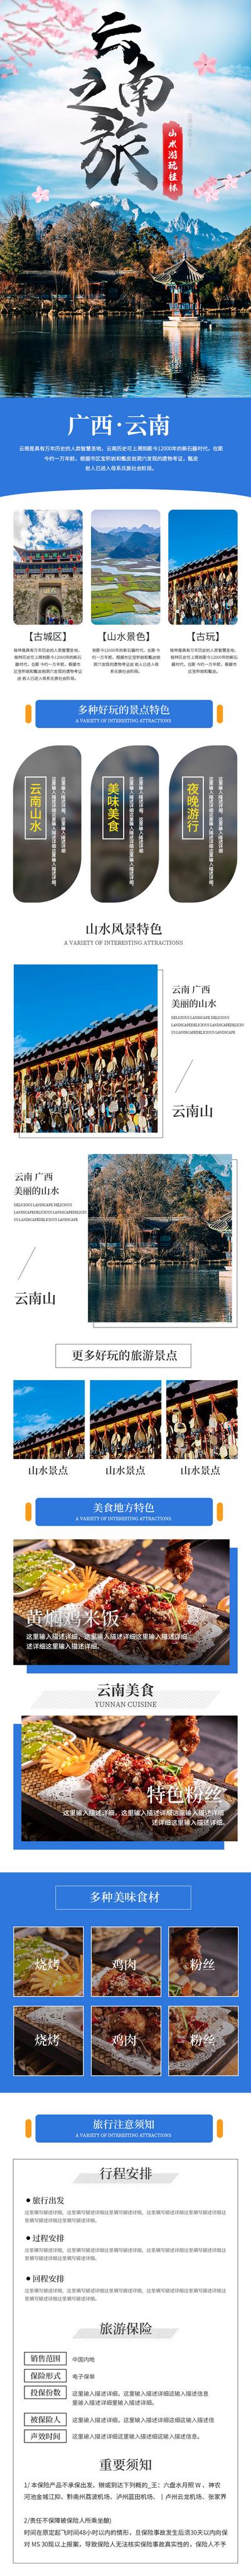 南门网 广告 海报 旅游 云南 广西 详情页